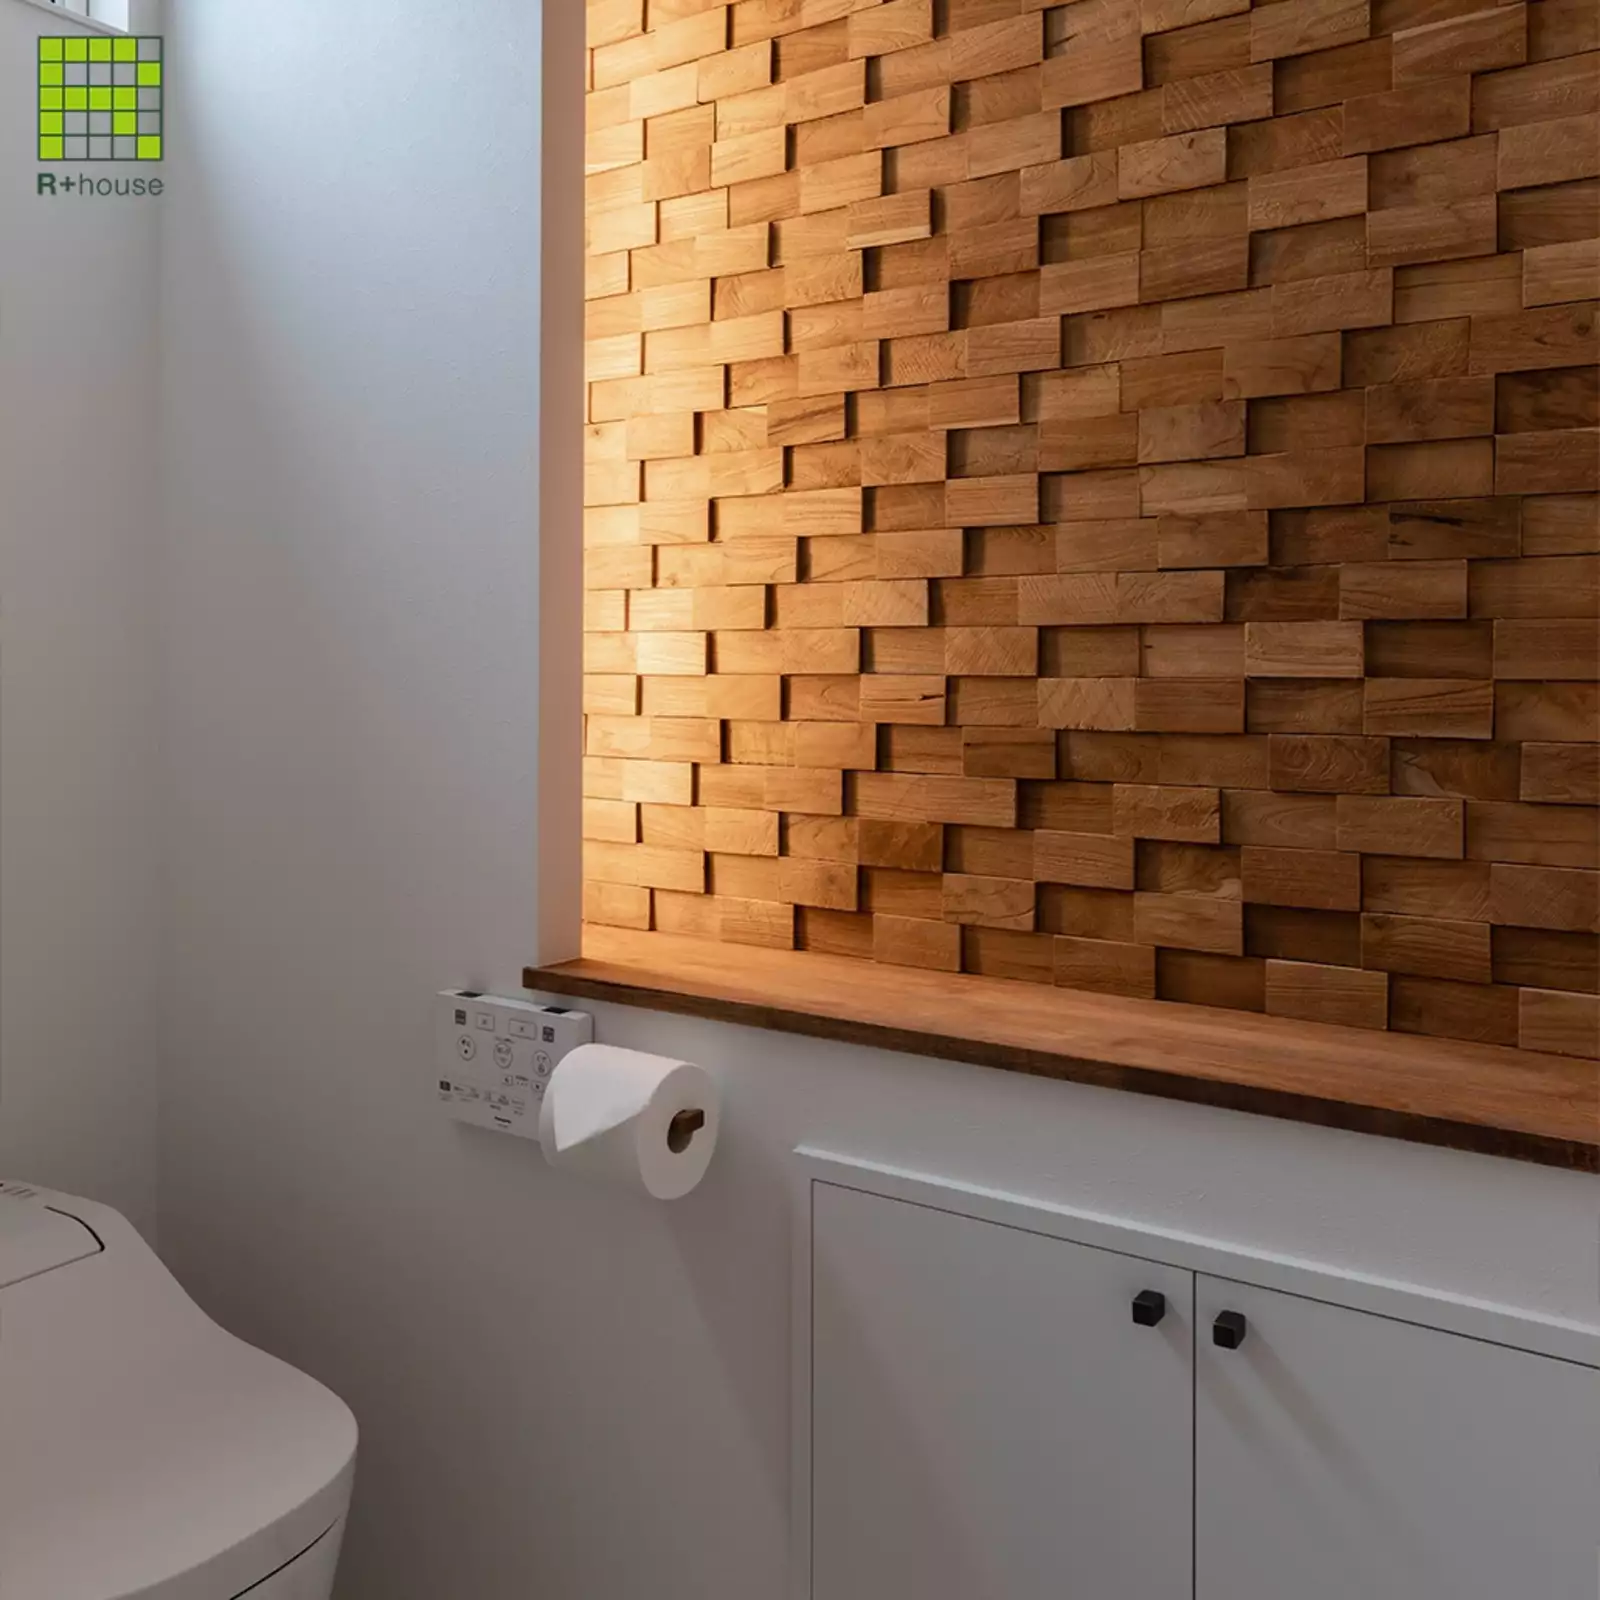 R+houseの物件のトイレの写真です。白を基調としたトイレの壁の一部に天然木をランダムに組み合わせたパネル。